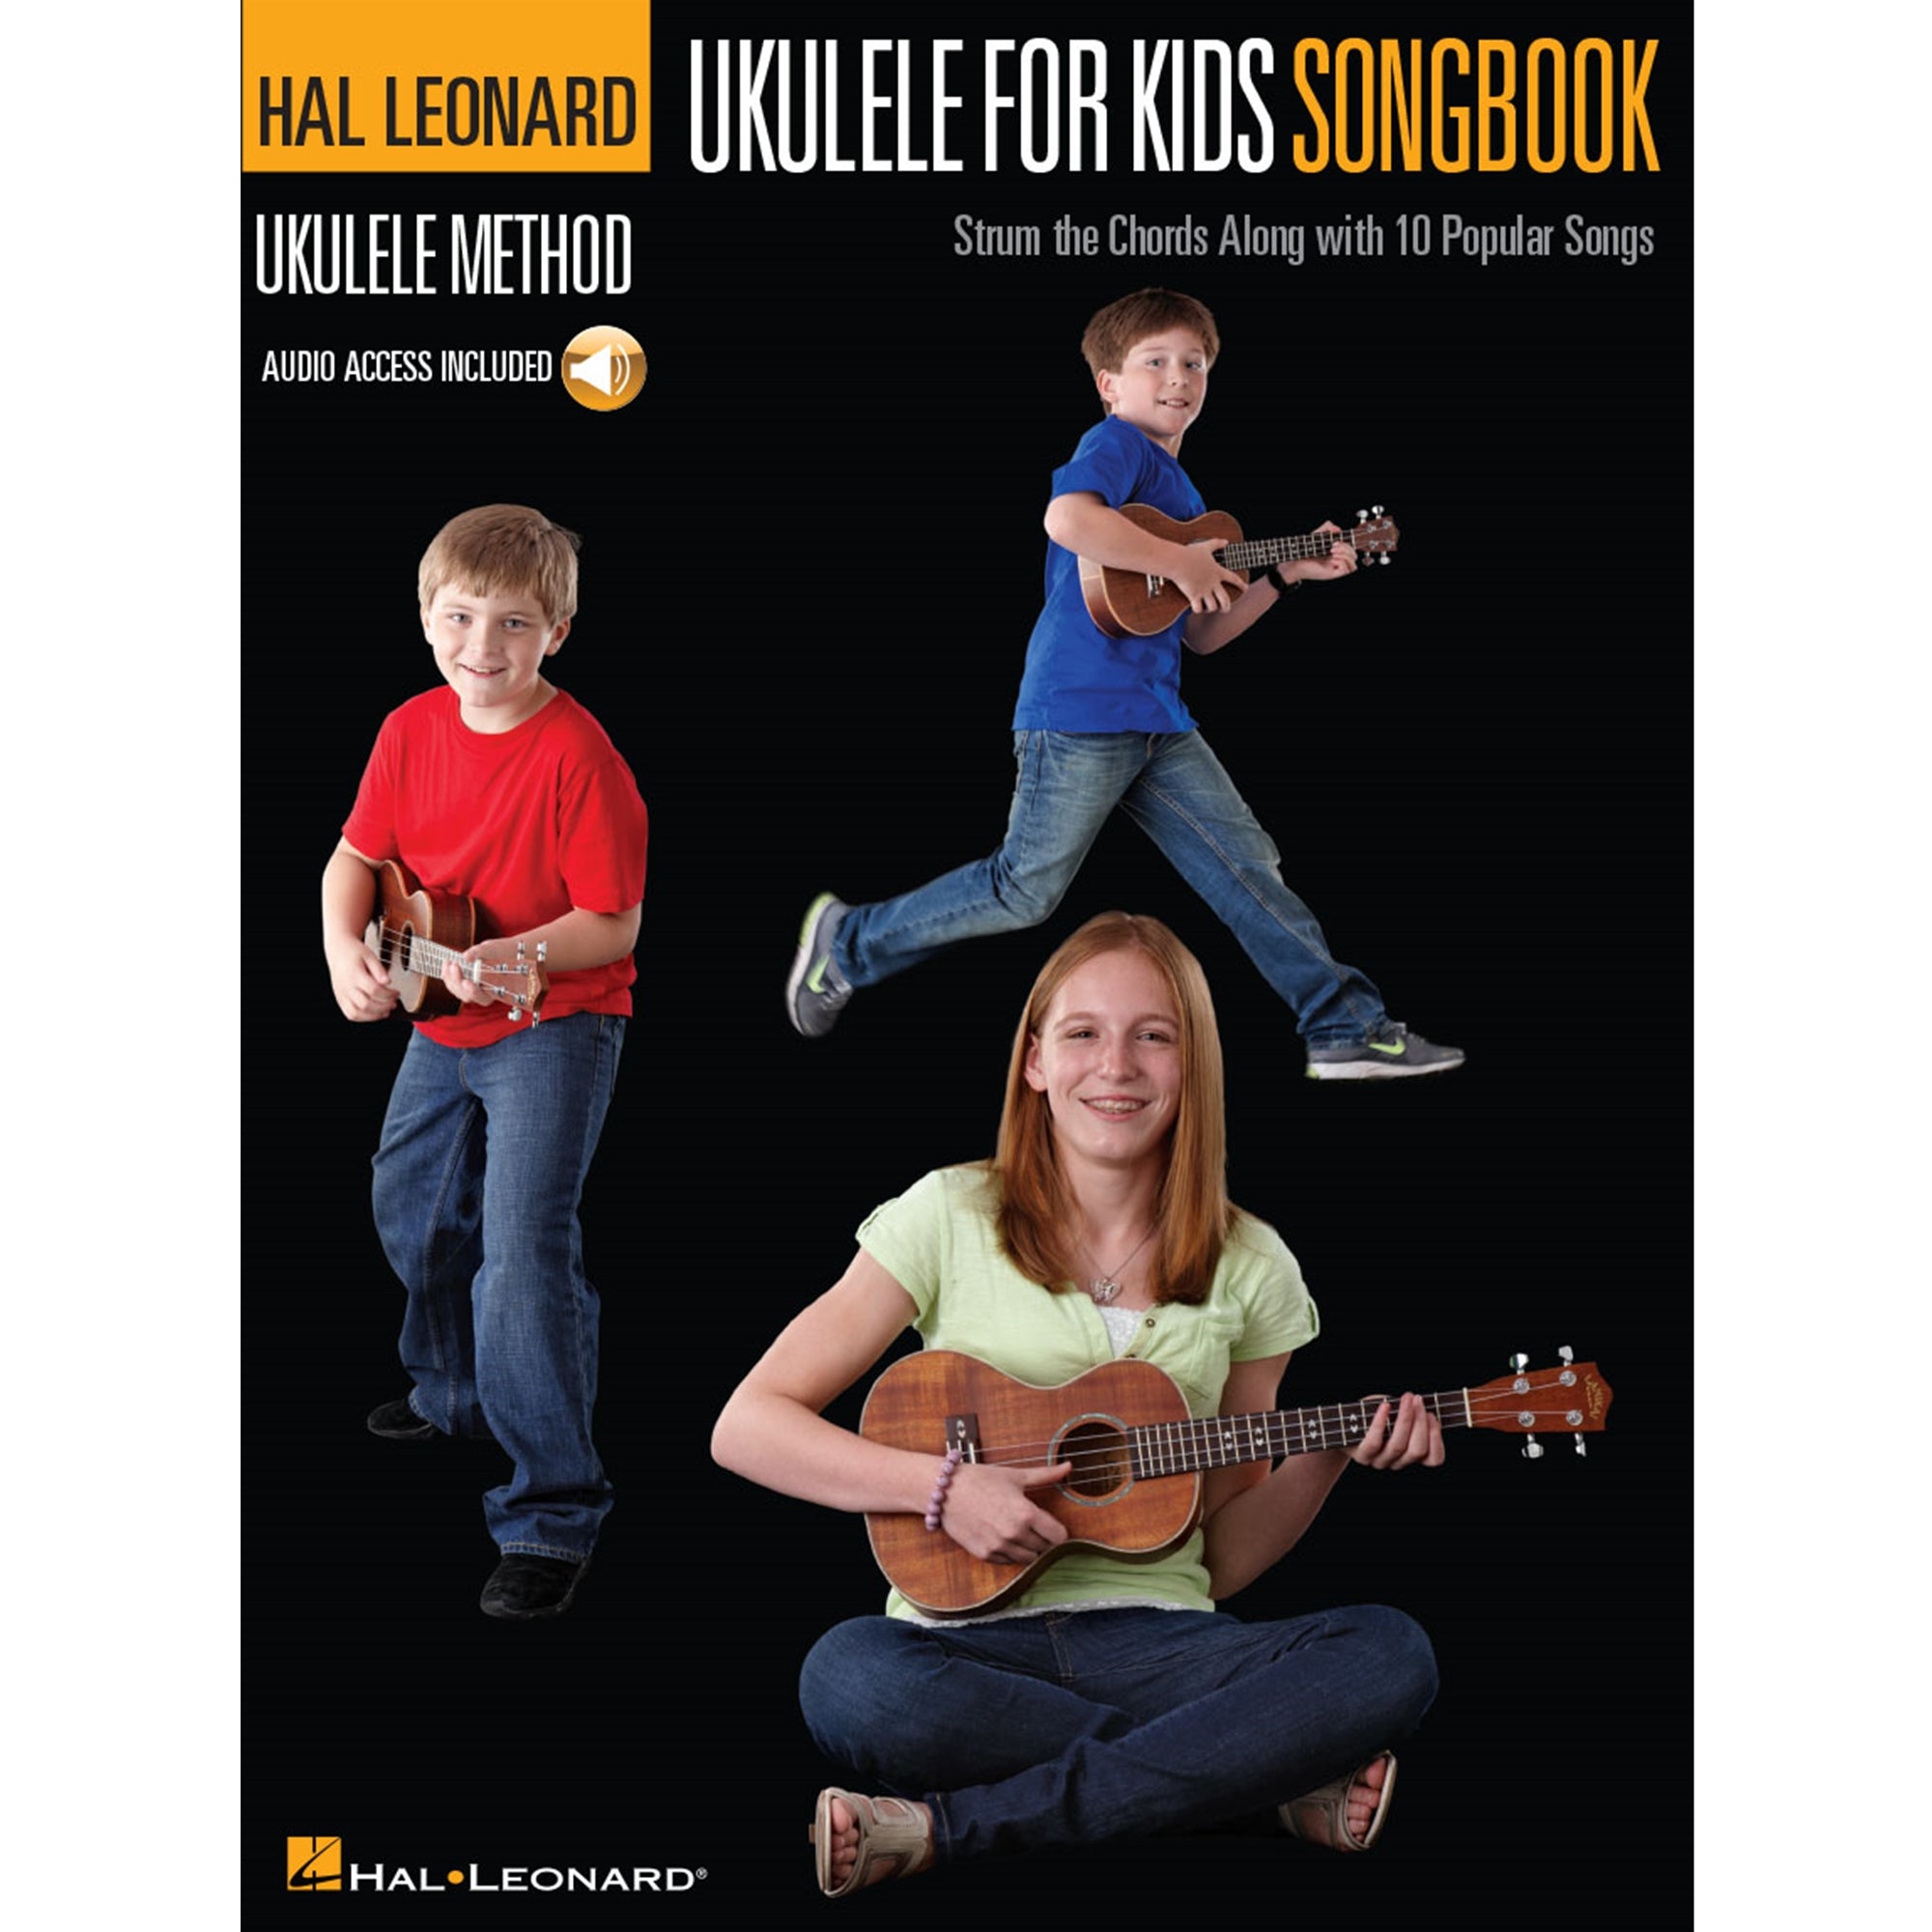 HAL LEONARD HL00153137 Ukulele for Kids Songbook